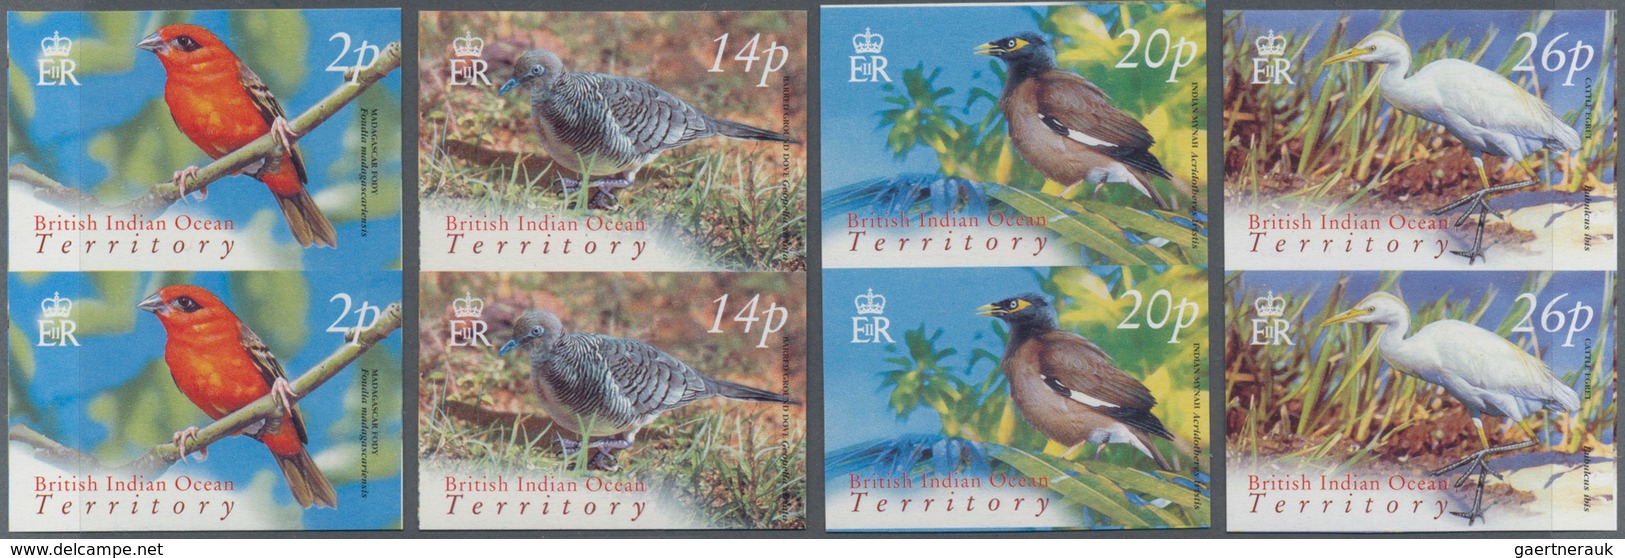 Britisches Territorium im Indischen Ozean: 2004, Bird definitives complete set of twelve in vertical